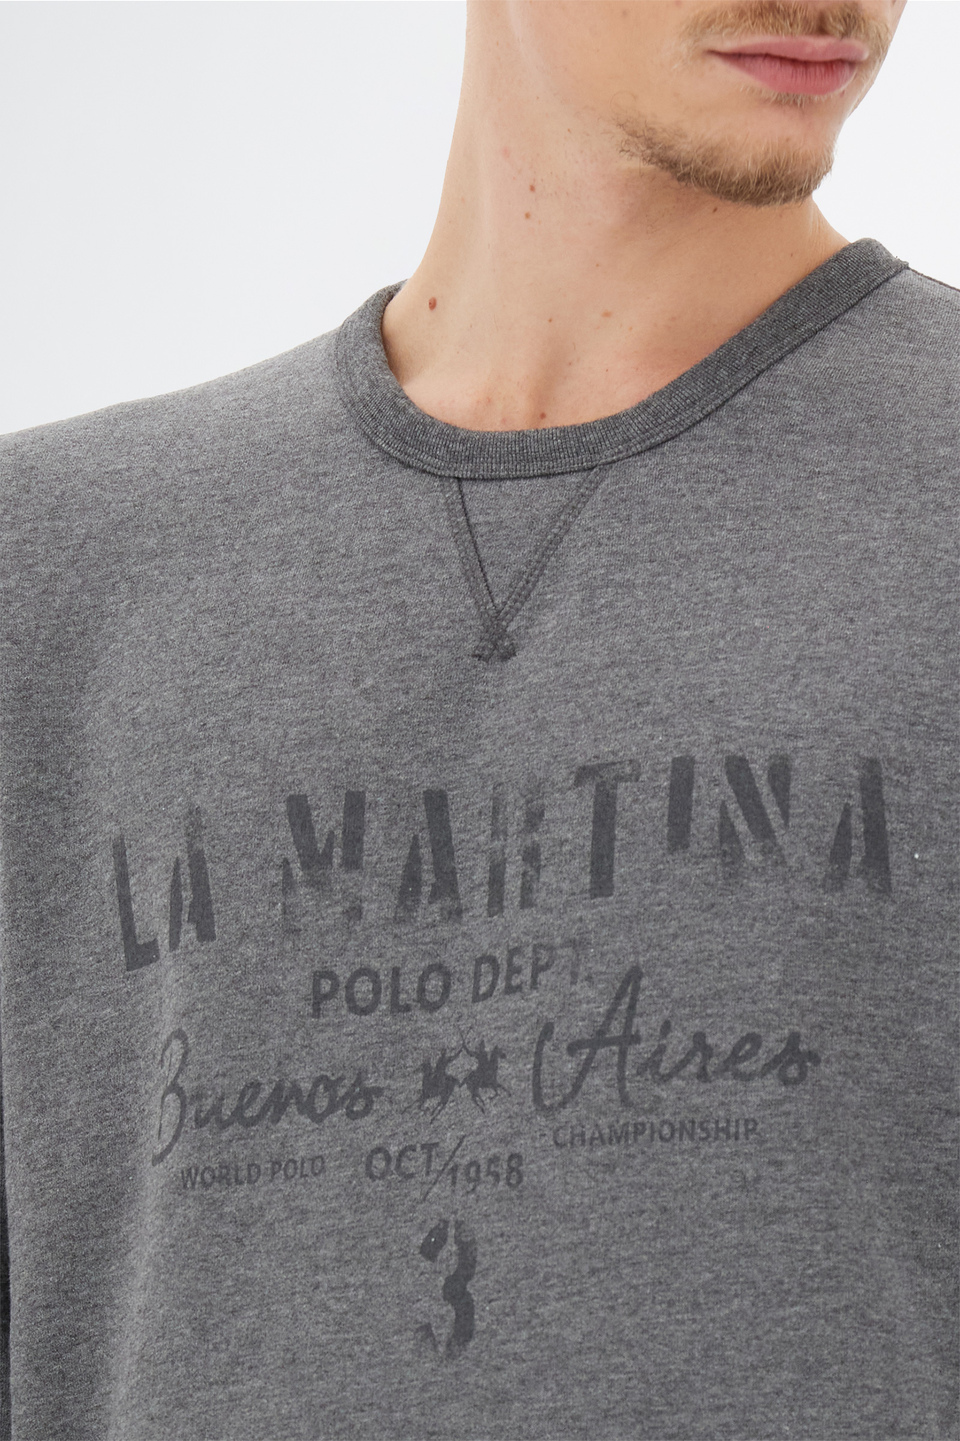 Sudadera de hombre Leyendas Del Polo con mangas largas en algodón polar de ajuste regular | La Martina - Official Online Shop